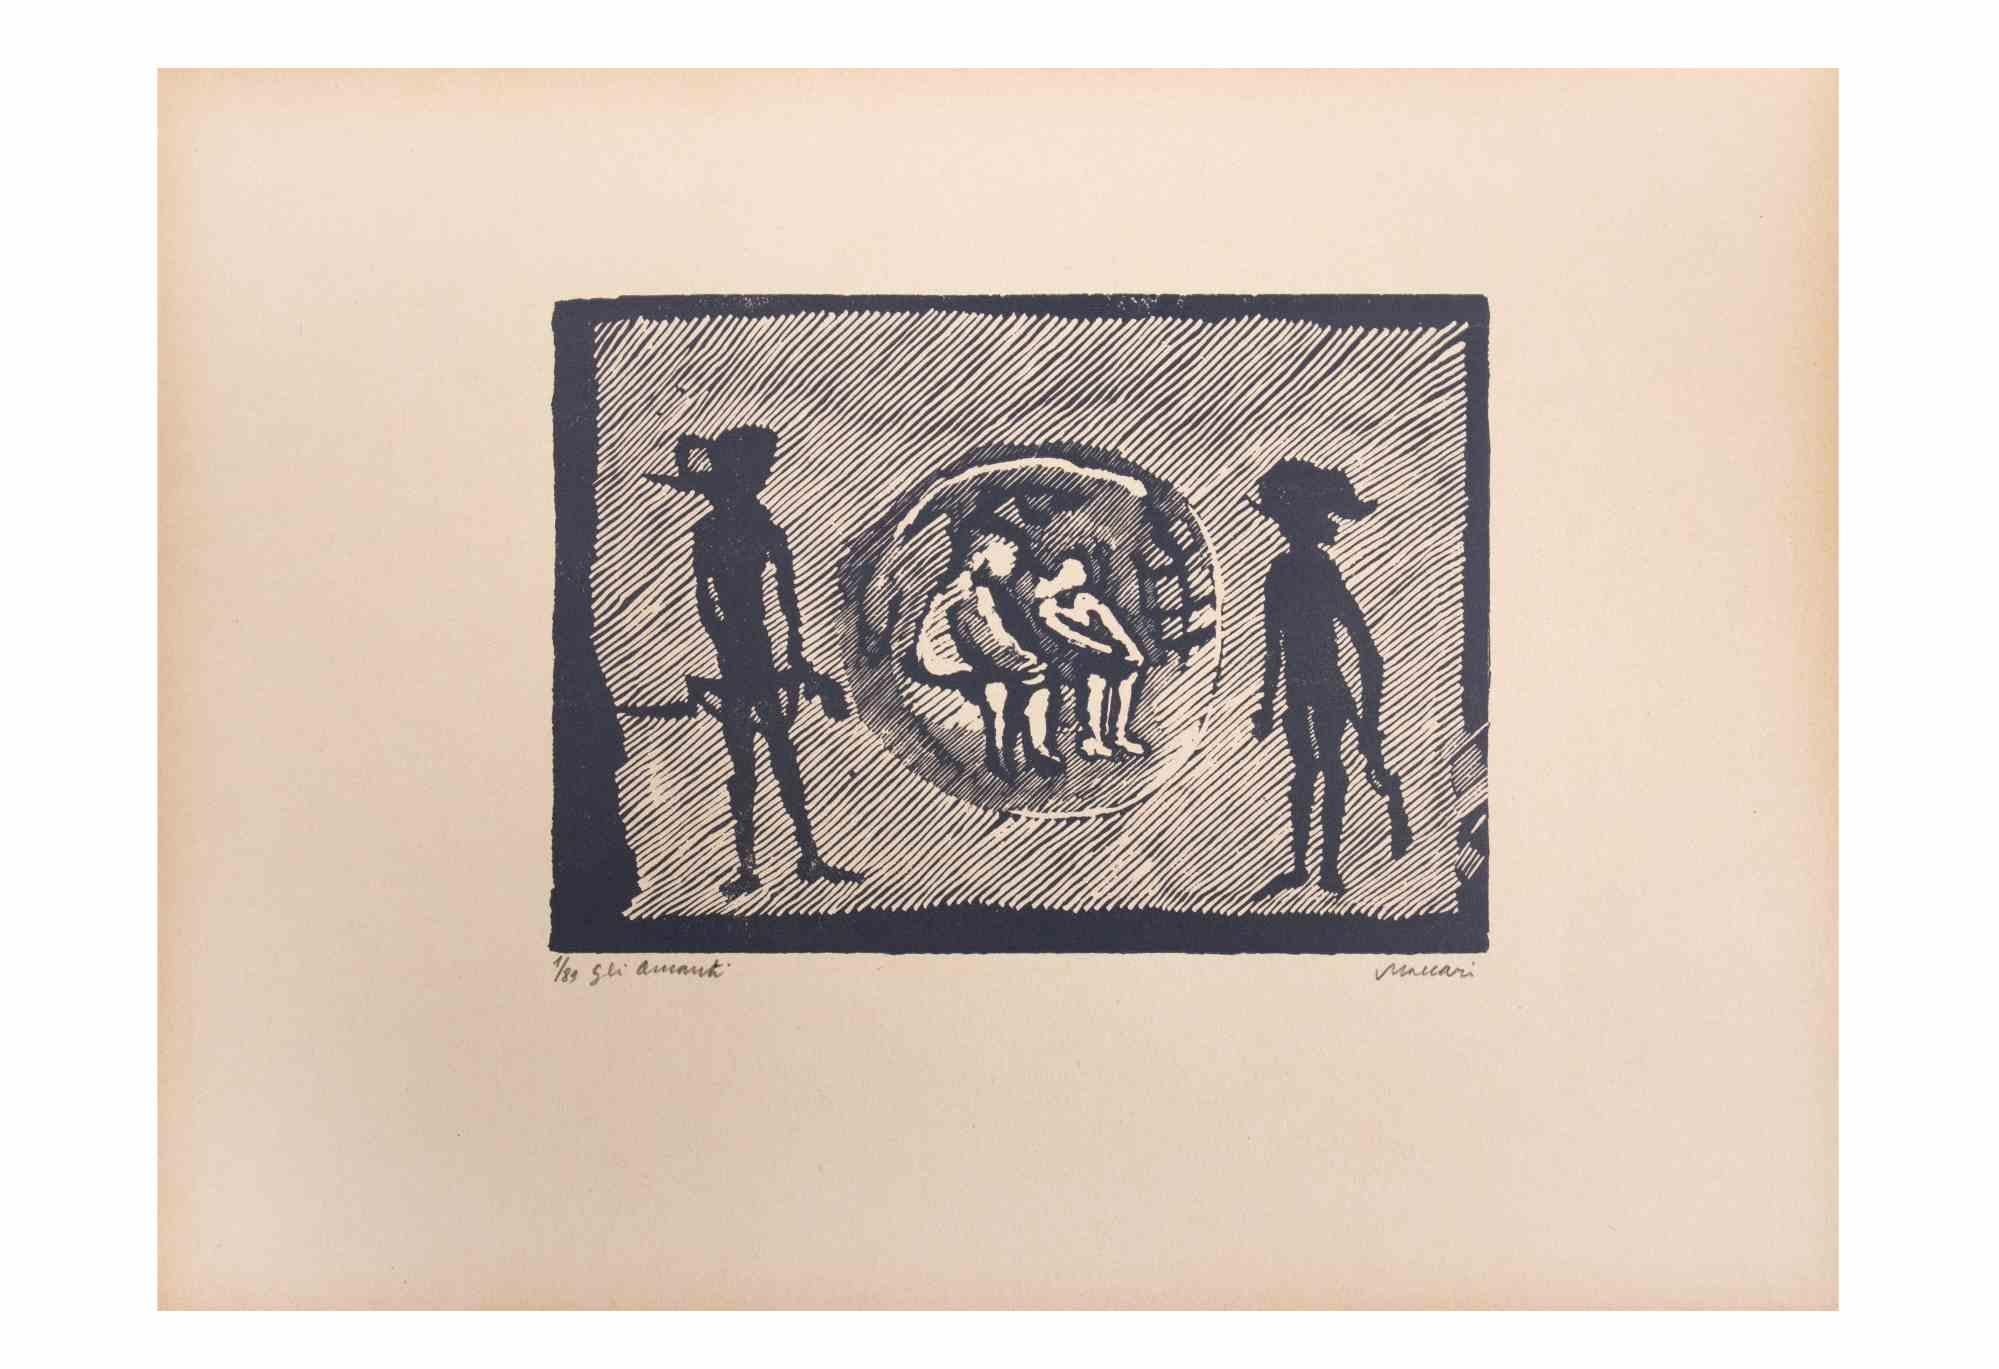 Les amants est une œuvre d'art réalisée par Mino Maccari (1924-1989) au milieu du 20e siècle.

Gravure sur bois sur papier. Signé à la main dans le coin inférieur droit. Numéroté 1/89 exemplaires et titré dans la marge gauche.

Bonnes